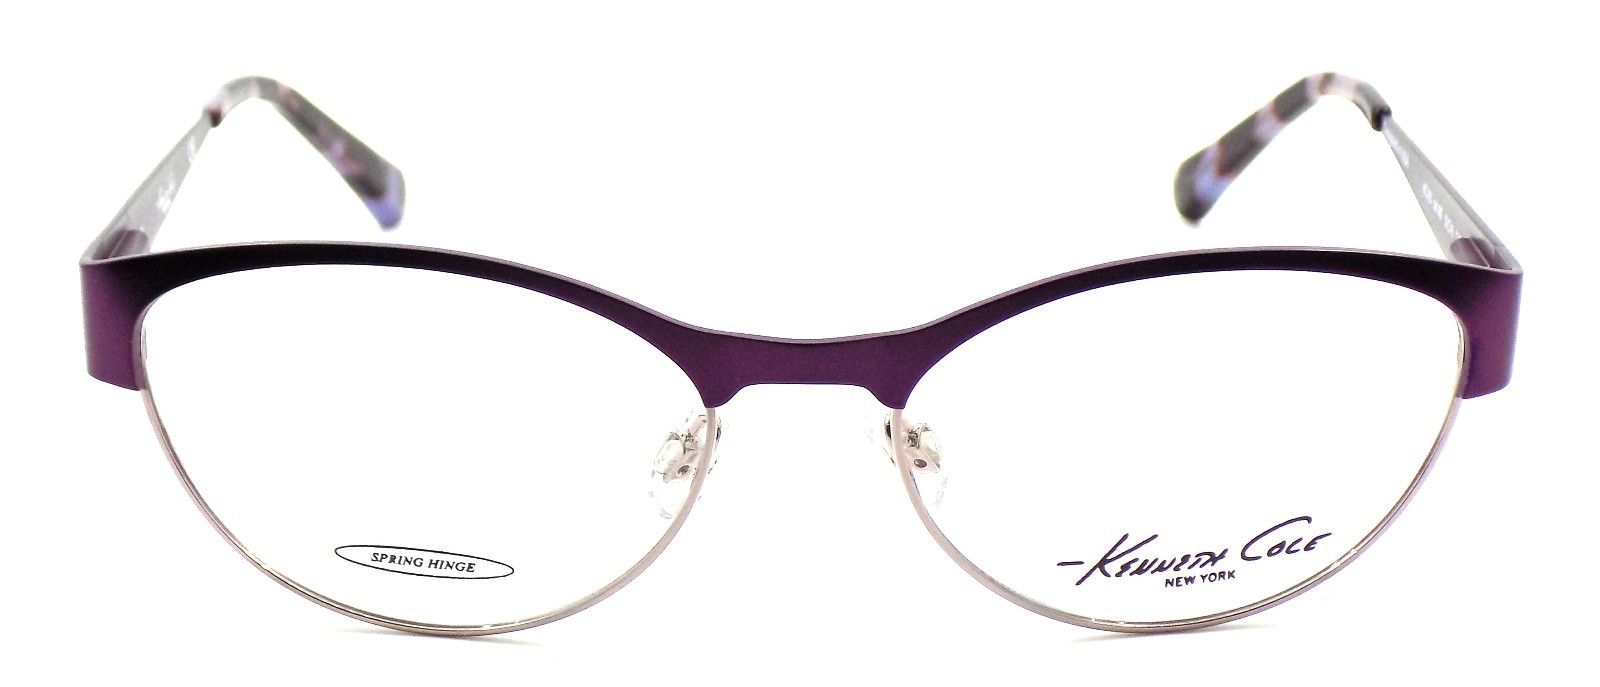 2-Kenneth Cole NY KC215 082 Women's Eyeglasses Frames 52-16-135 Matte Violet +CASE-664689630769-IKSpecs